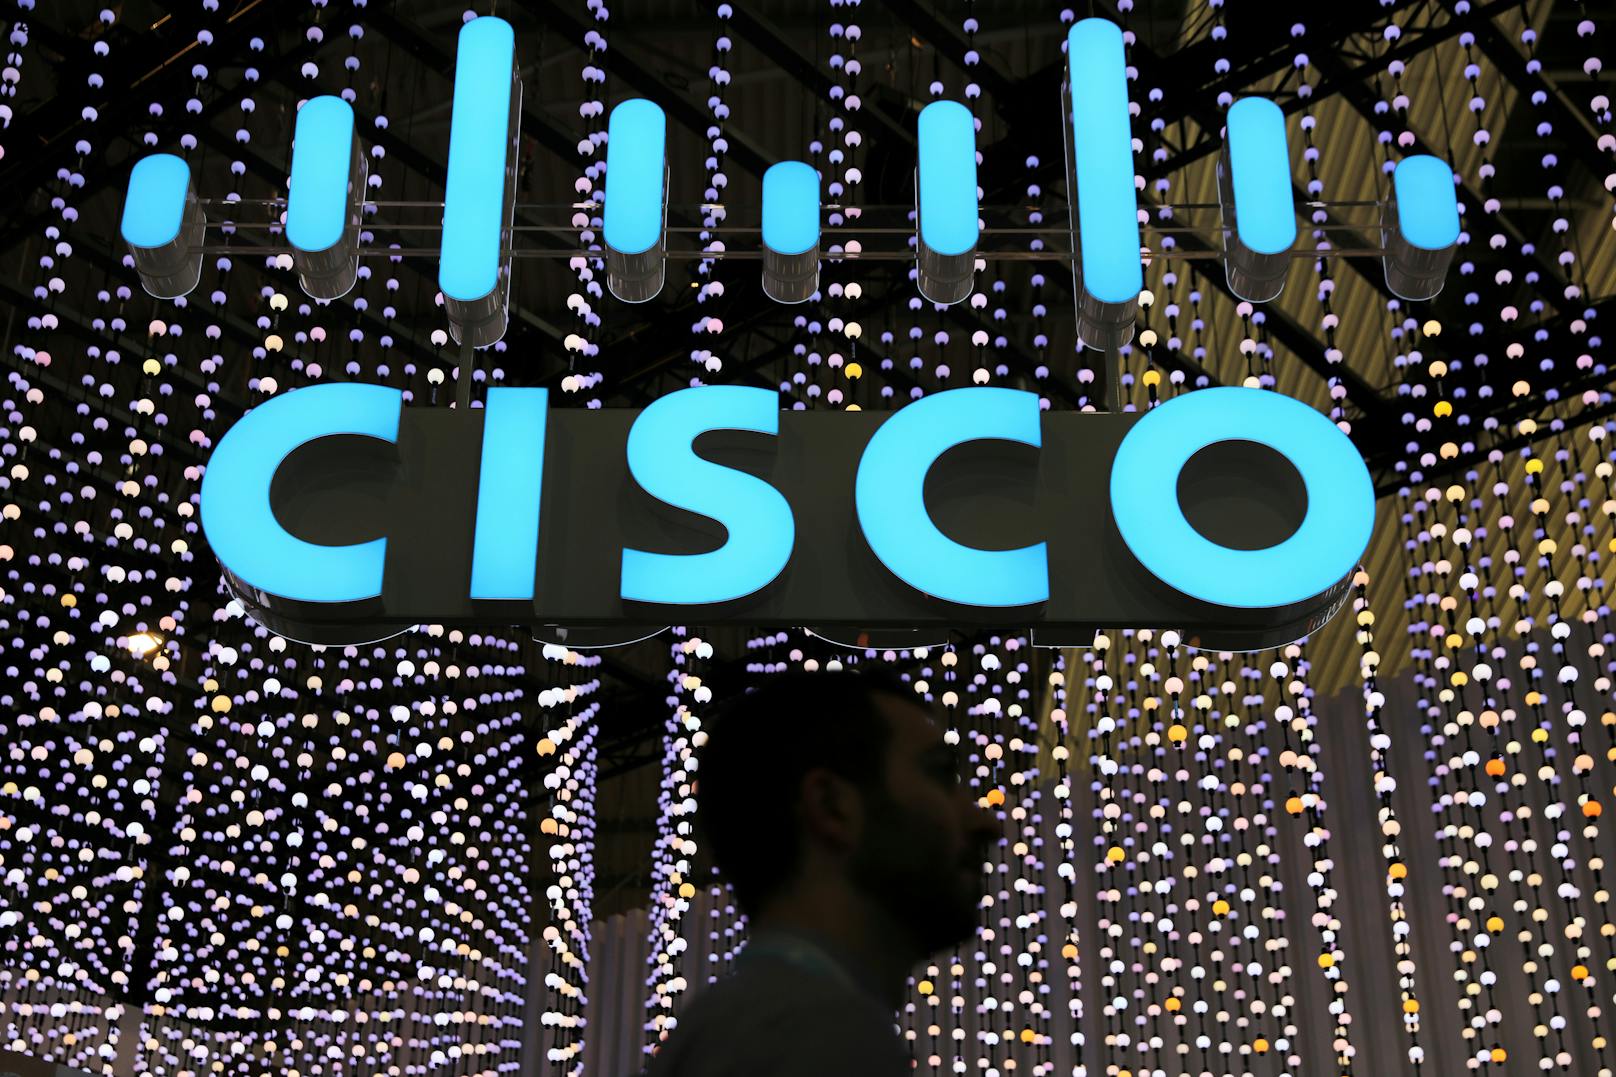 Cisco identifiziert Ransomware als größte Cyber-Bedrohung für Unternehmen.